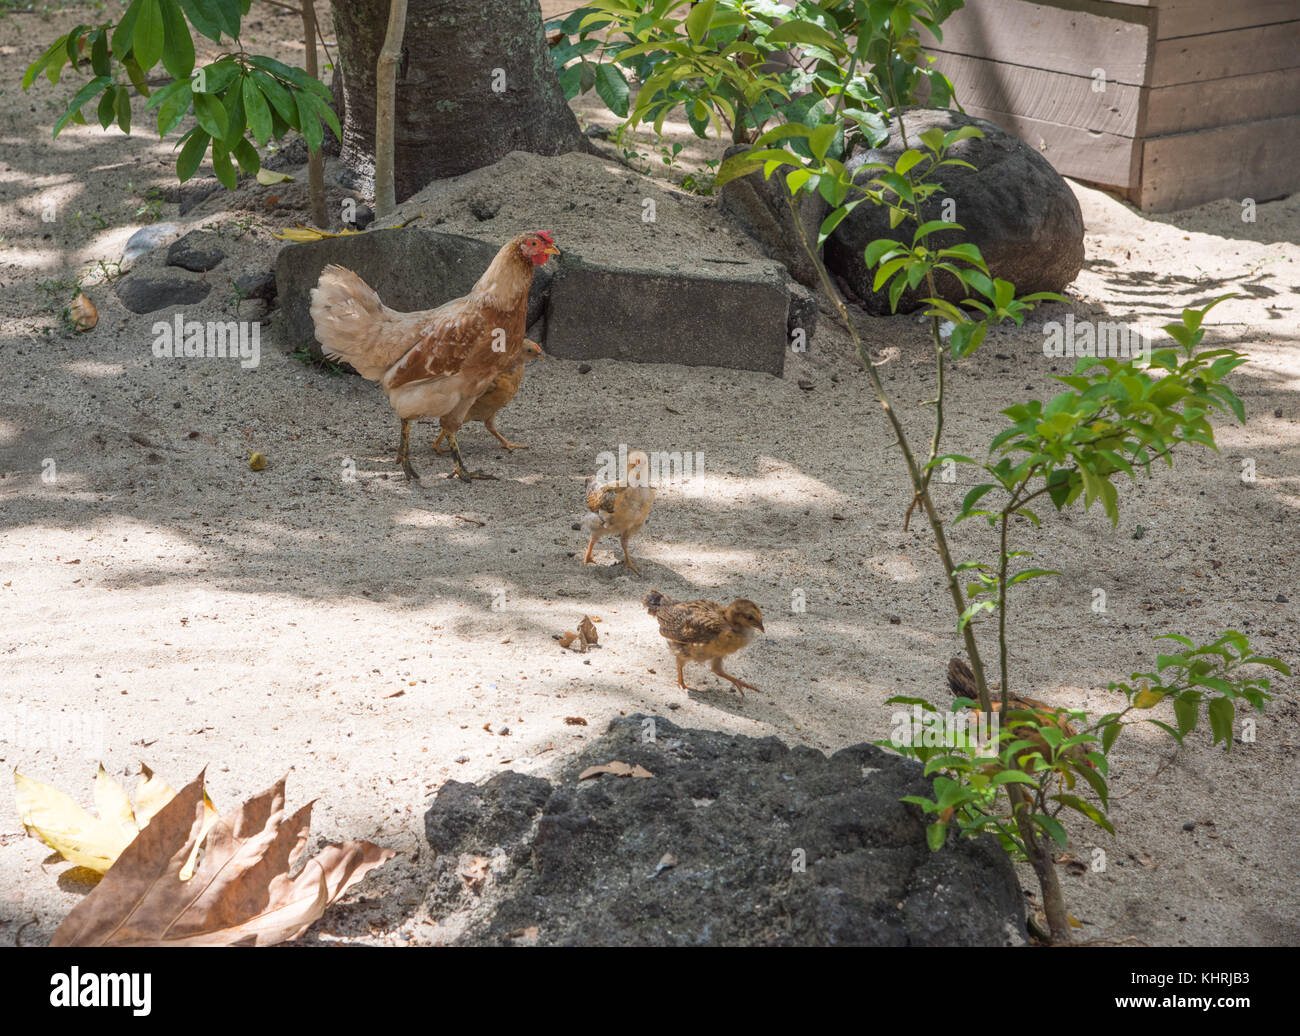 Chioccia e suoi bambini il roaming libero sul terreno sabbioso su dravuni island, isole Figi Foto Stock